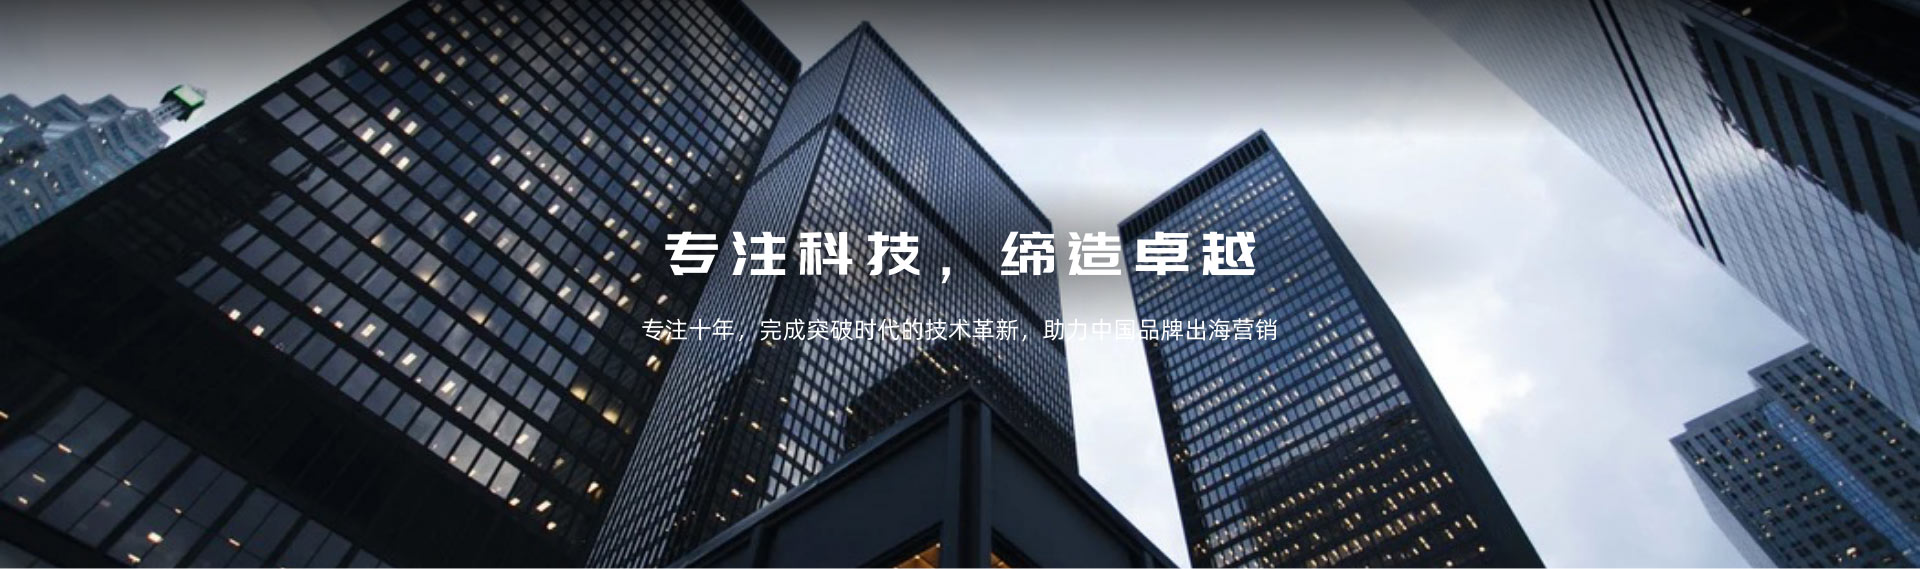 环球广贸专注十年，完成突破时代的技术革新，助力中国品牌出海营销。